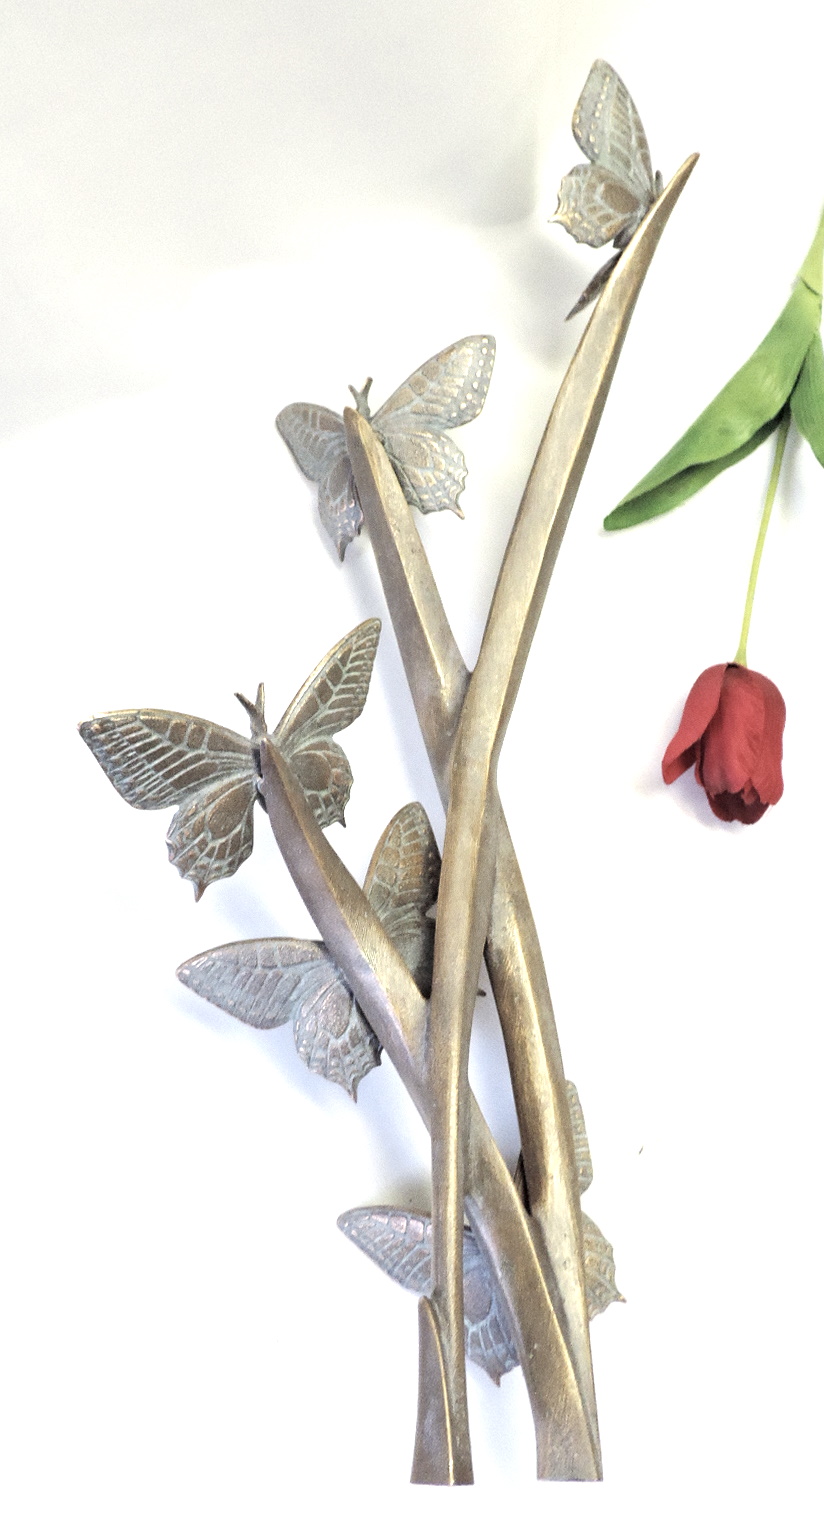 Schmetterlingsflug, Schmetterlinge auf Pflanze, Skulptur, Grab